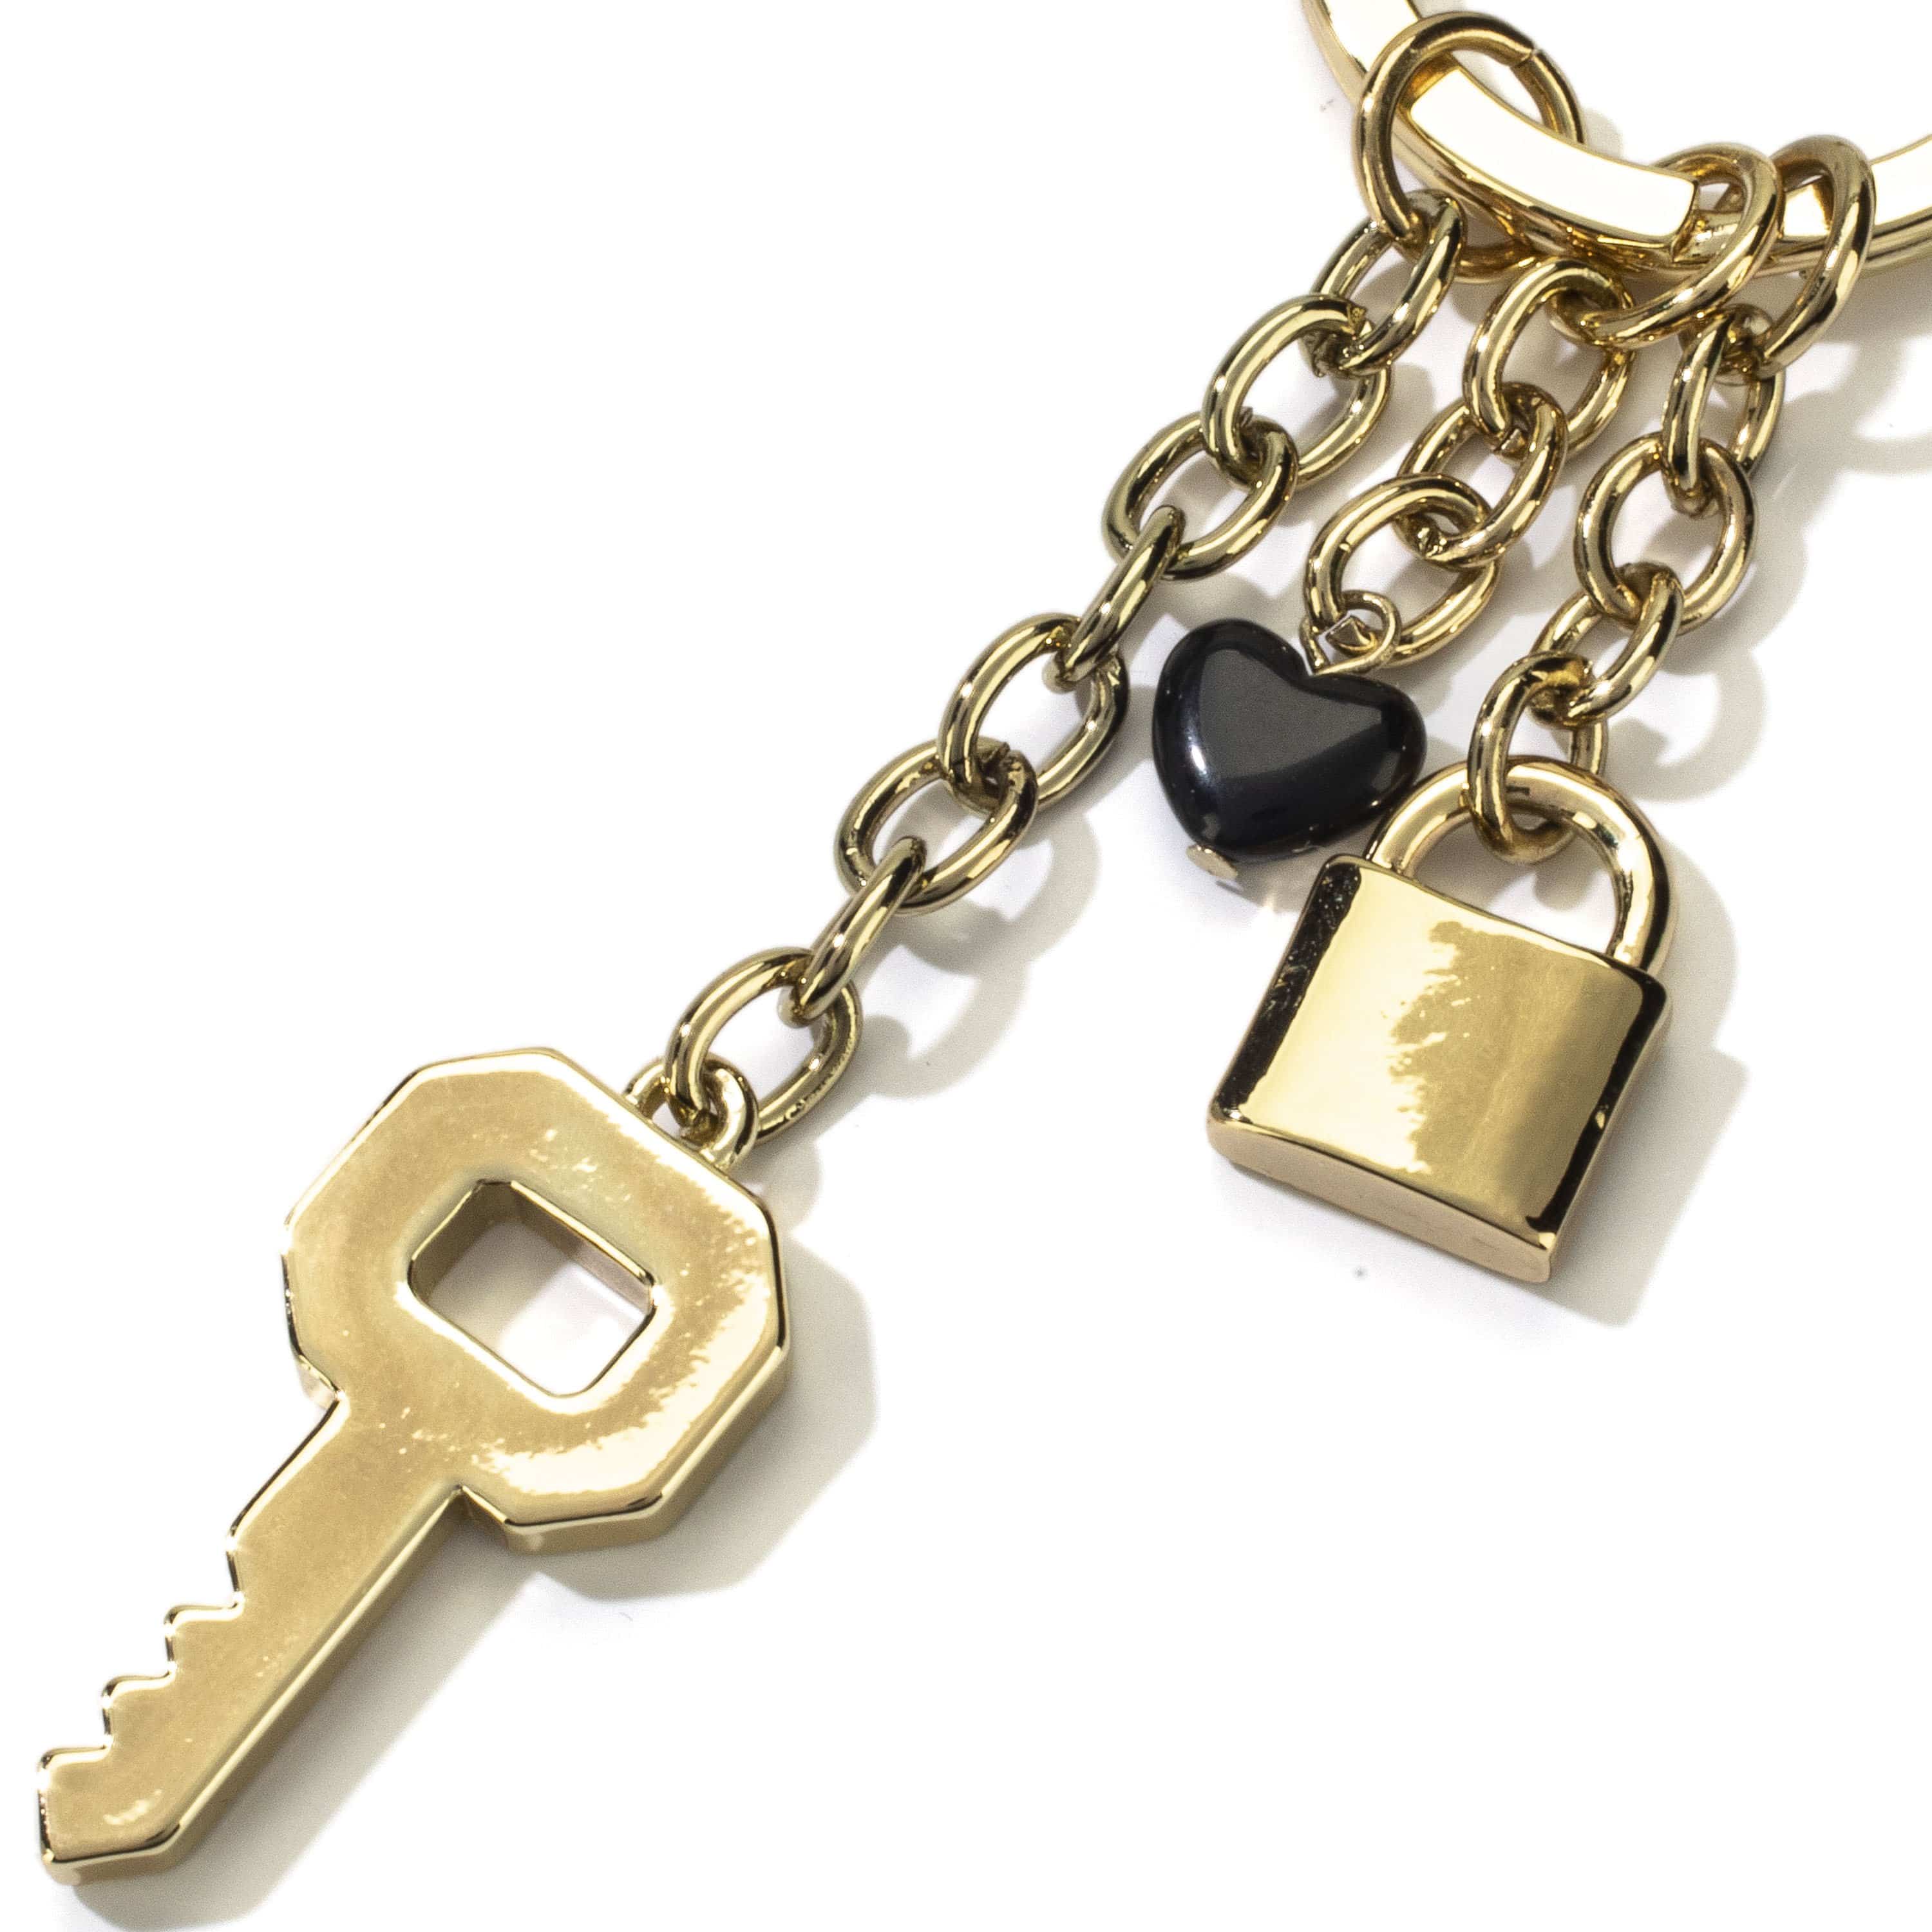 Kalifano Crystal Keychains Key with Lock Keychain made with Swarovski Crystals SKC-185